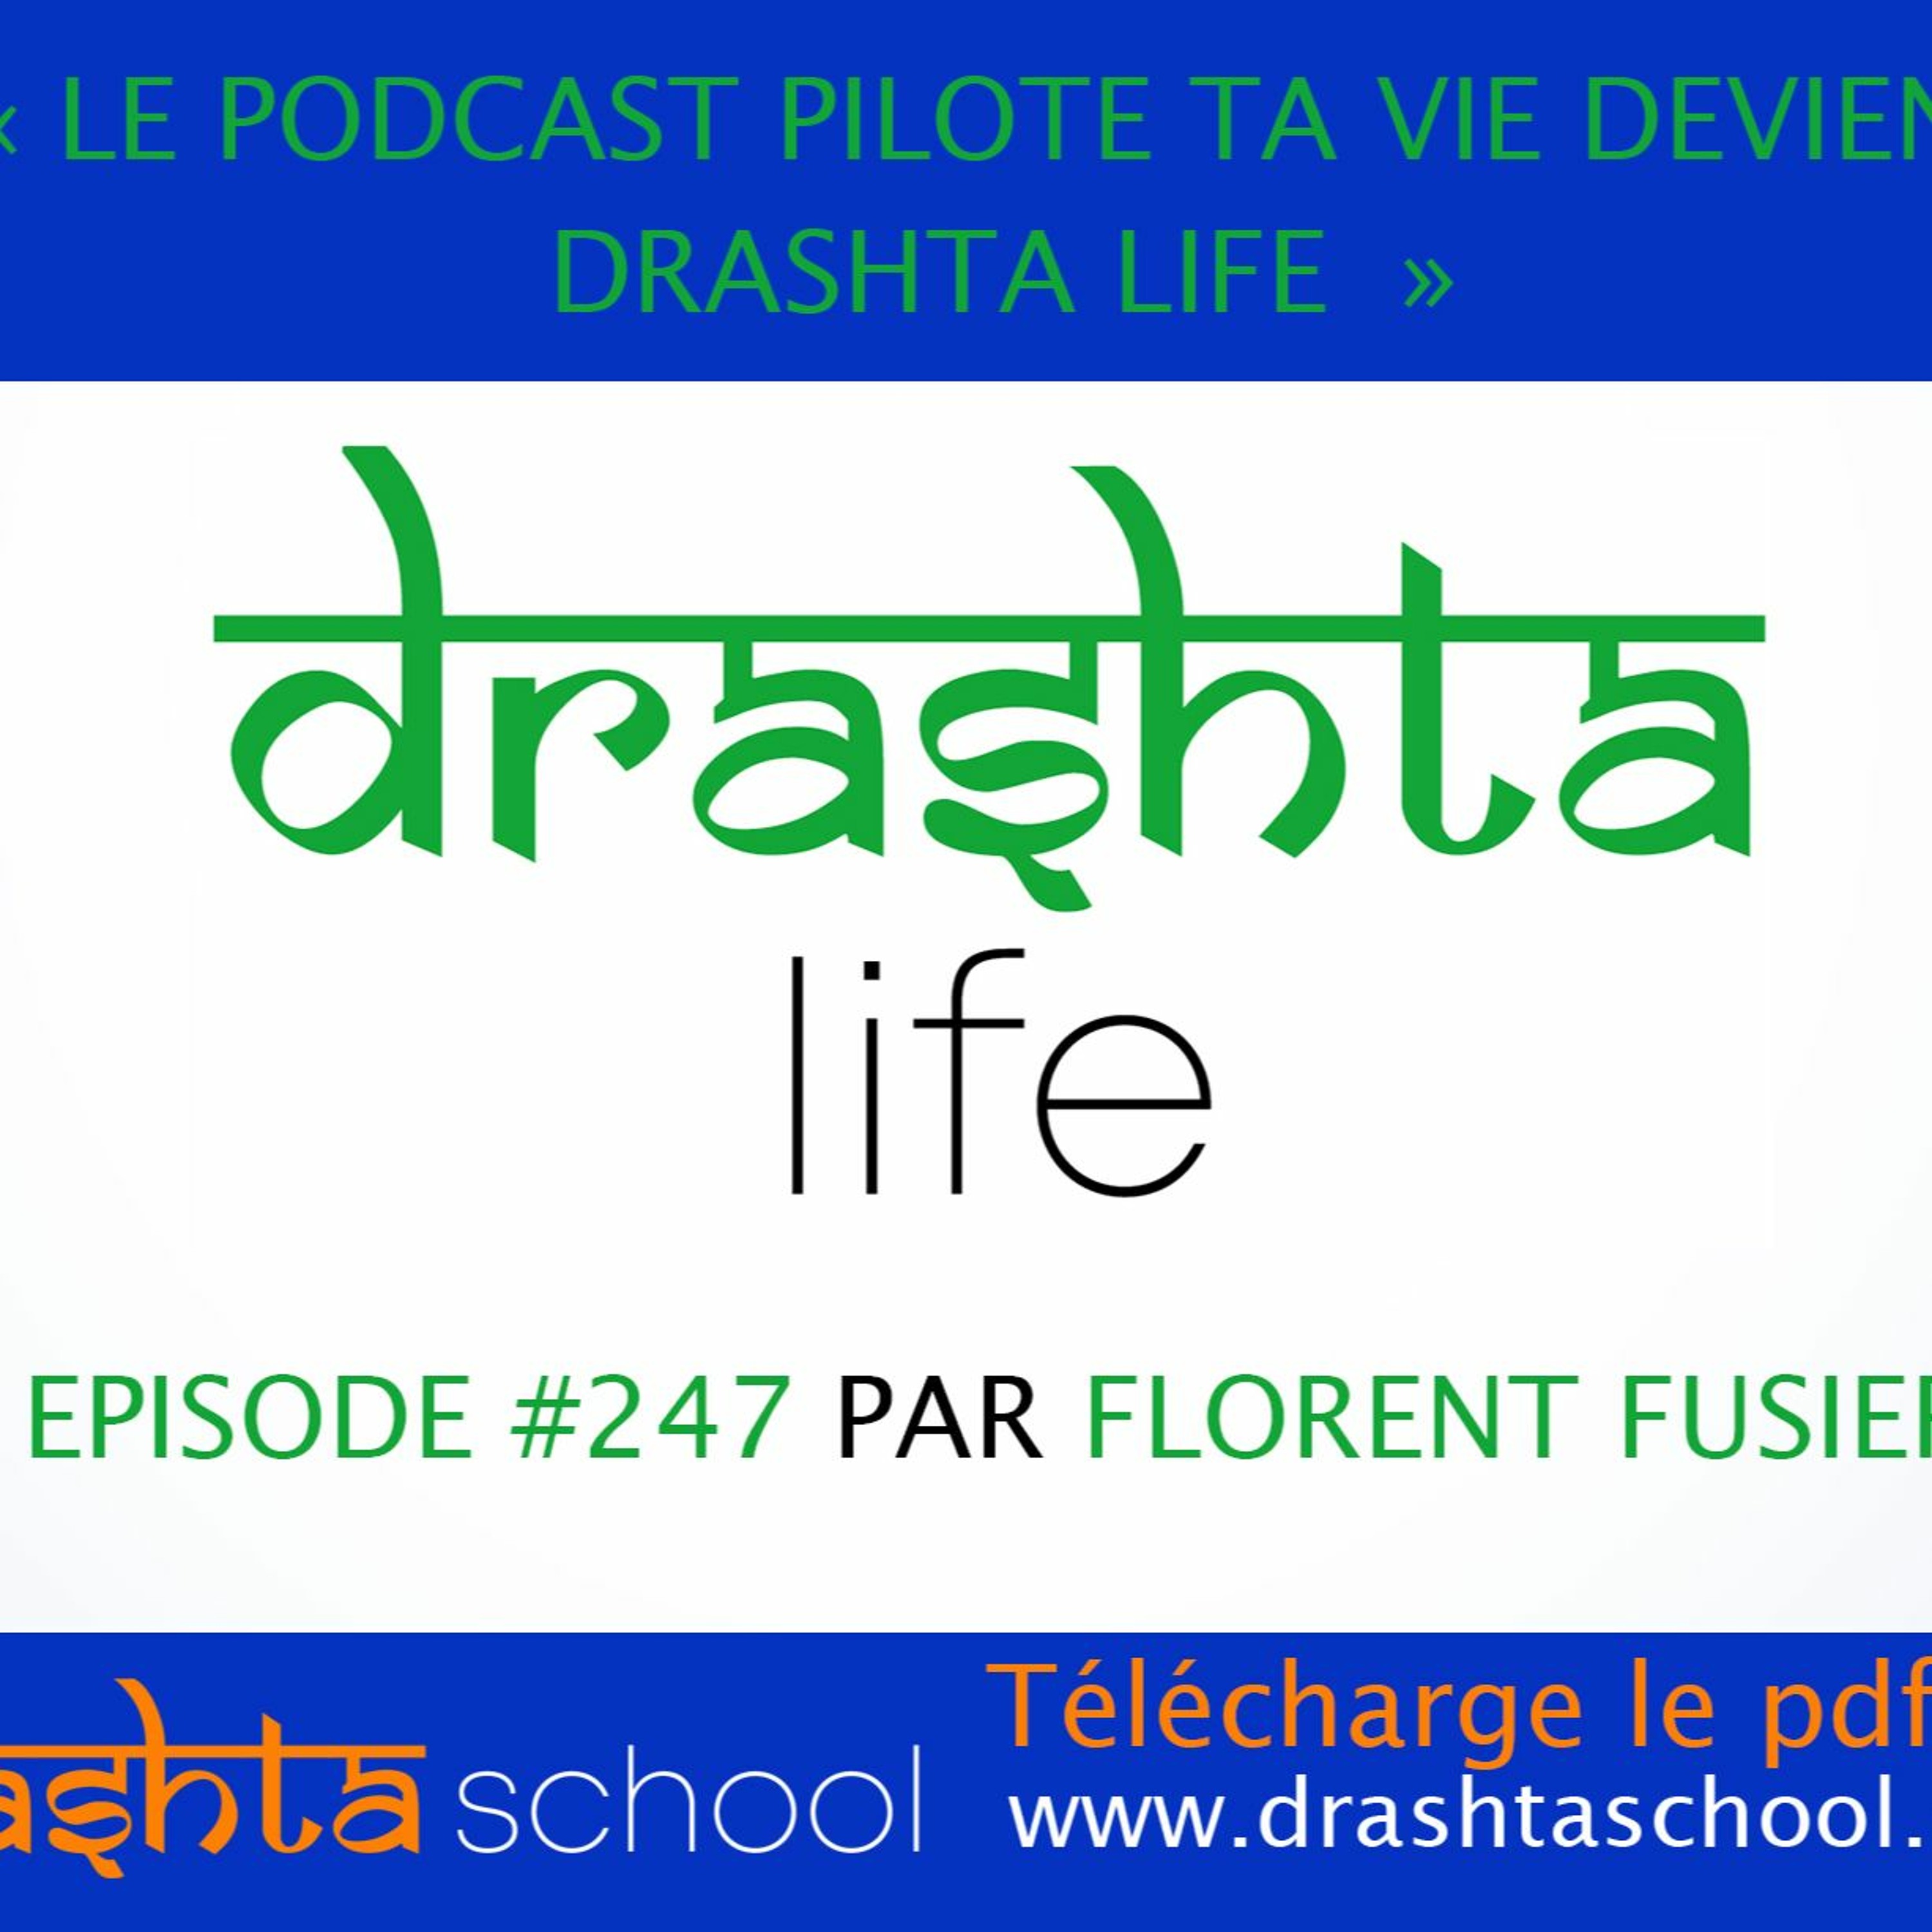 #247 - PILOTE TA VIE deviens "DRASHTA LIFE" : la nouvelle dynamique du podcast